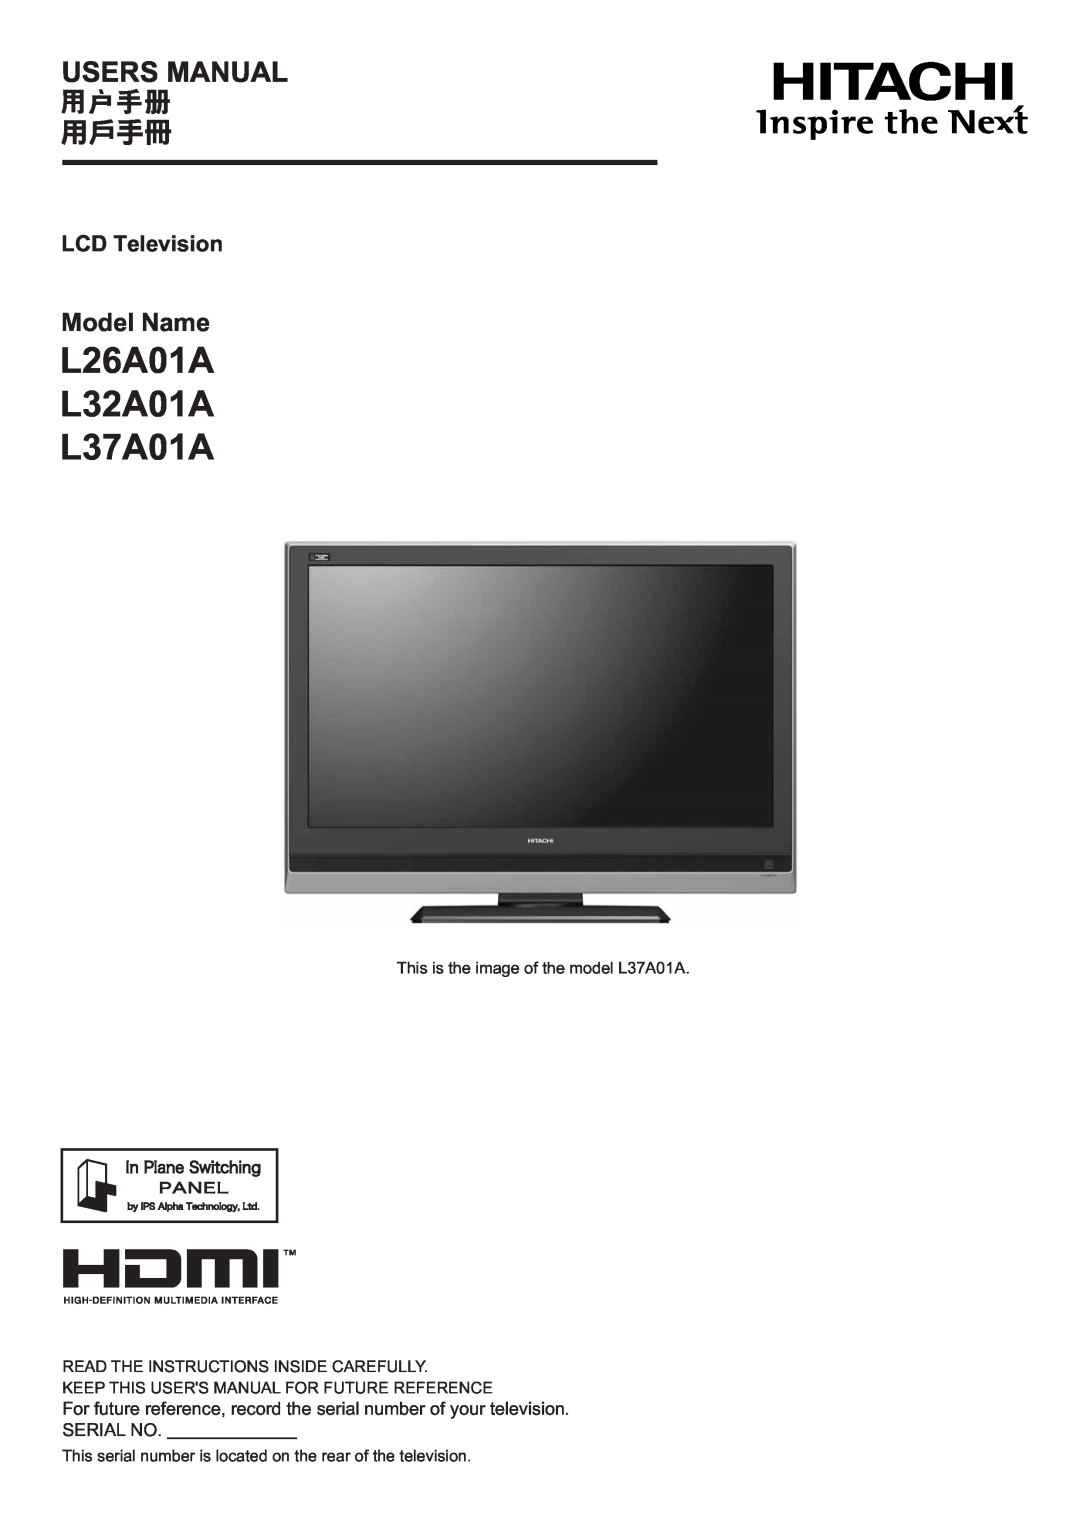 Hitachi user manual L26A01A L32A01A L37A01A, Model Name, LCD Television, Serial No 